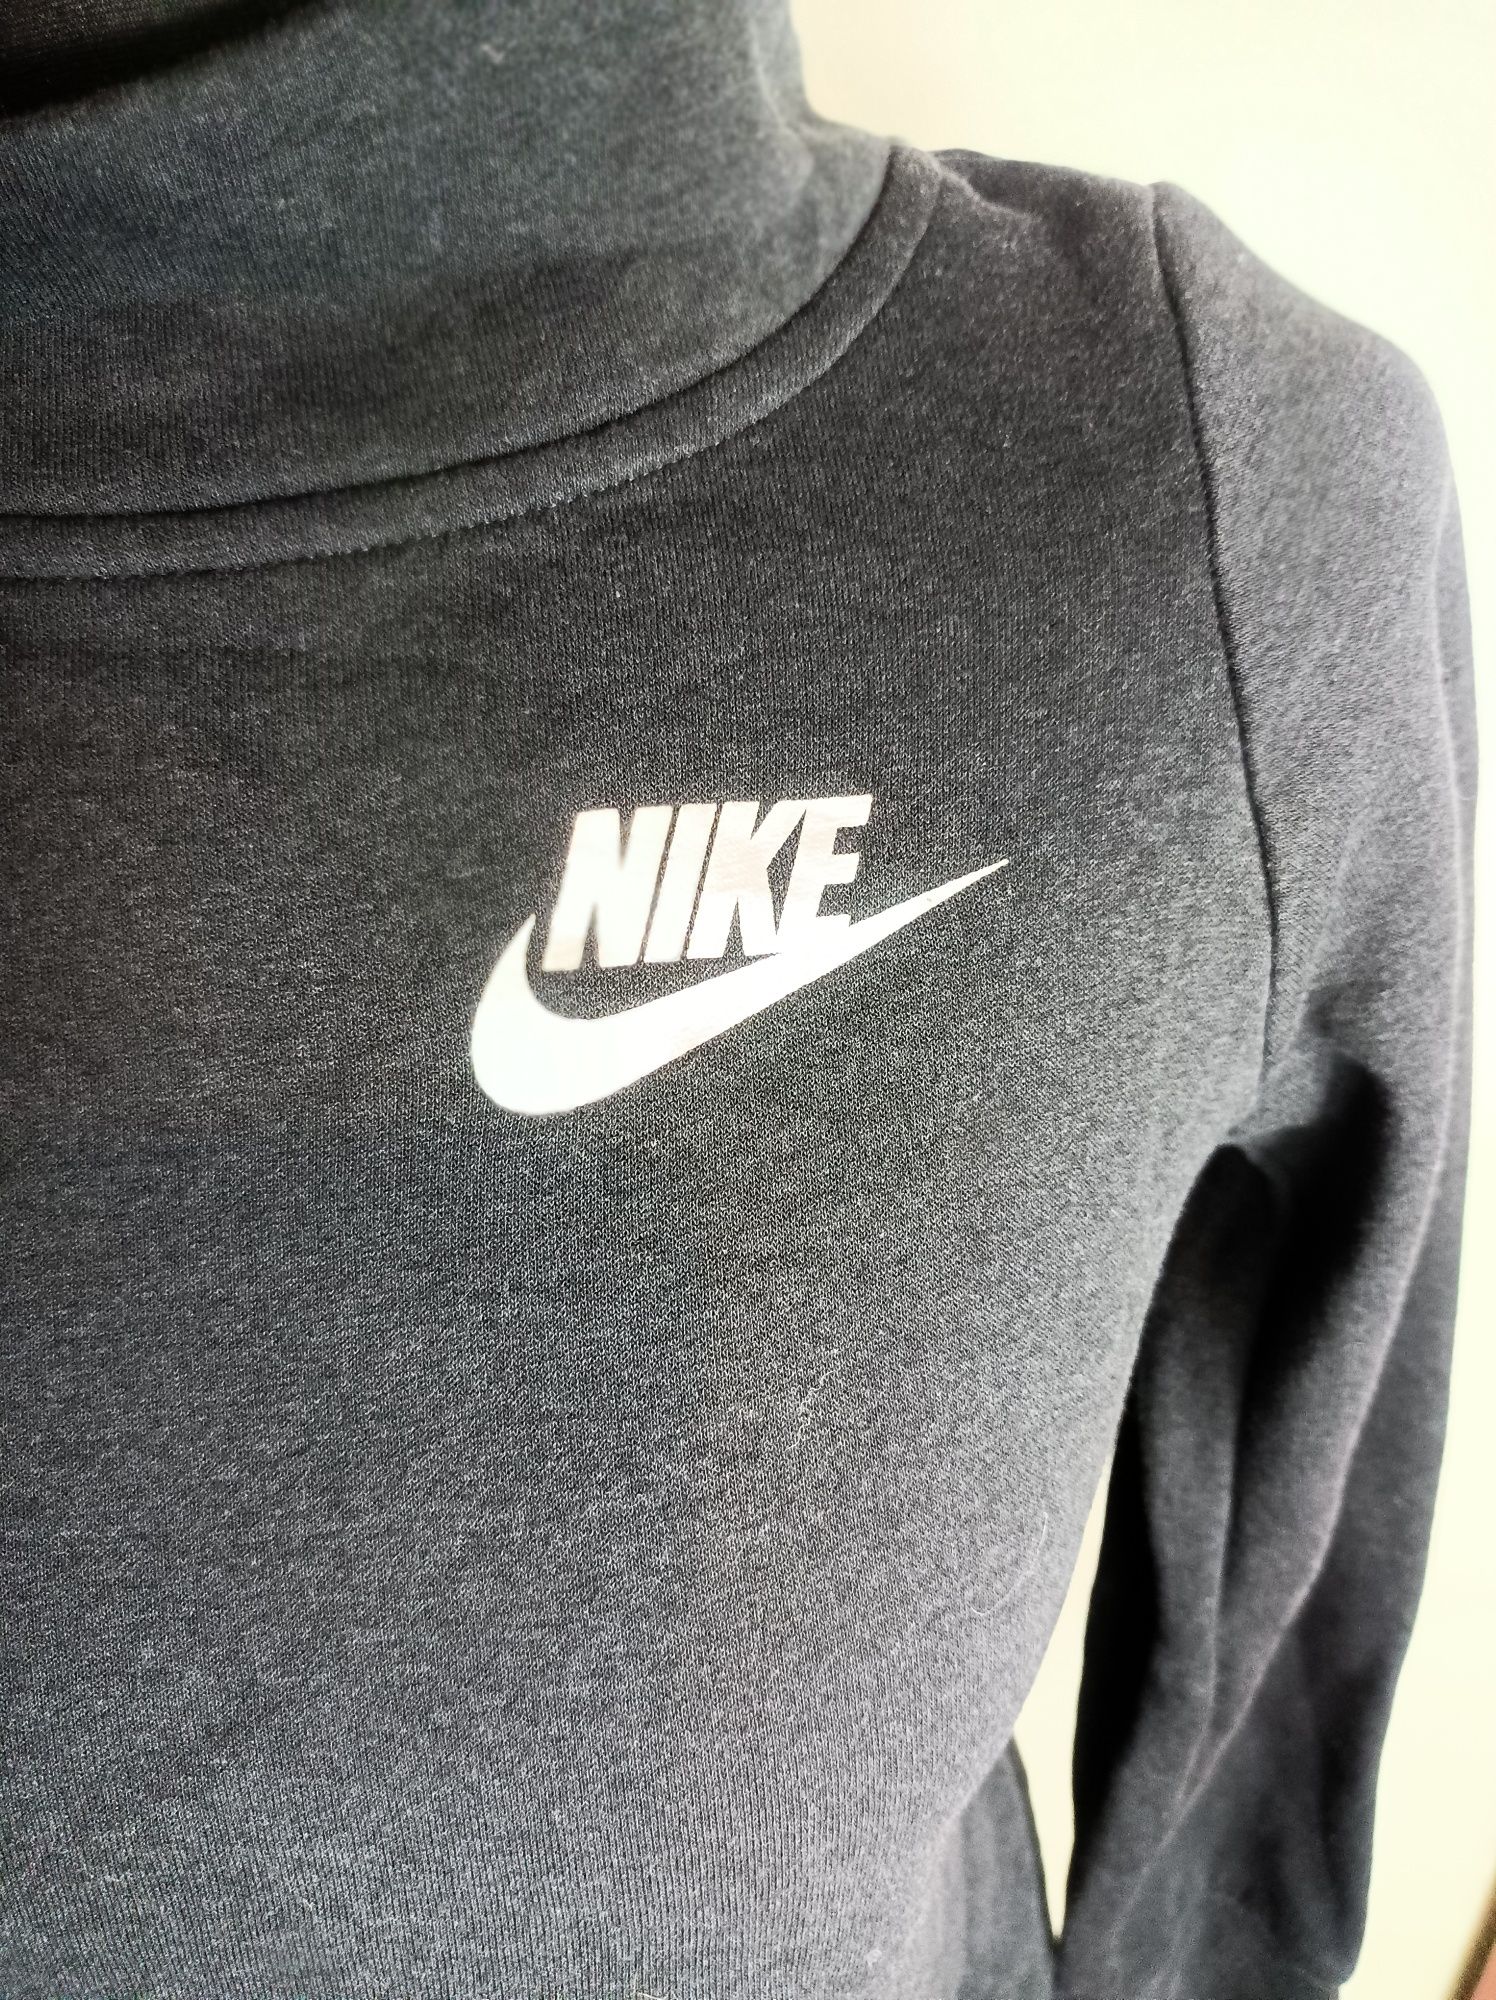 Czarny golfik bluza  Nike M 38 napis holo piękny tył